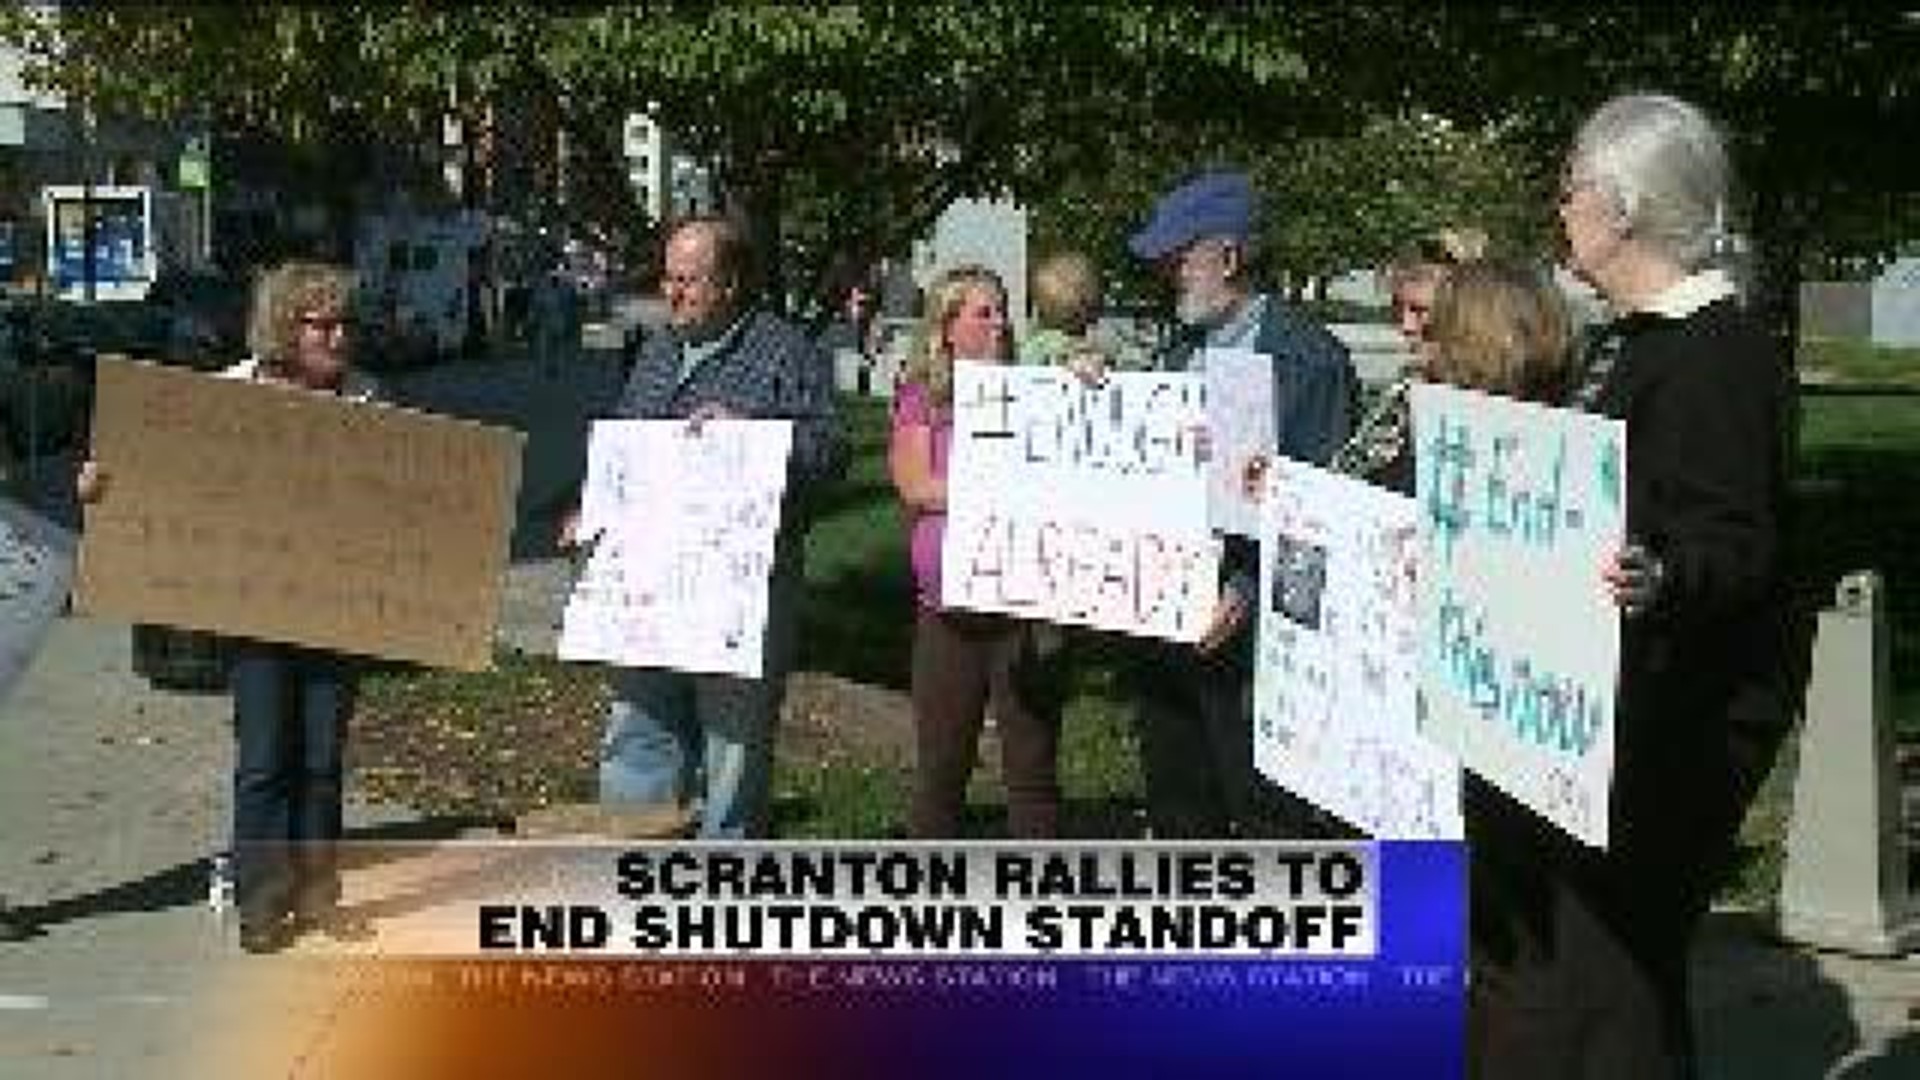 Scranton Rallies to End Shutdown Standoff